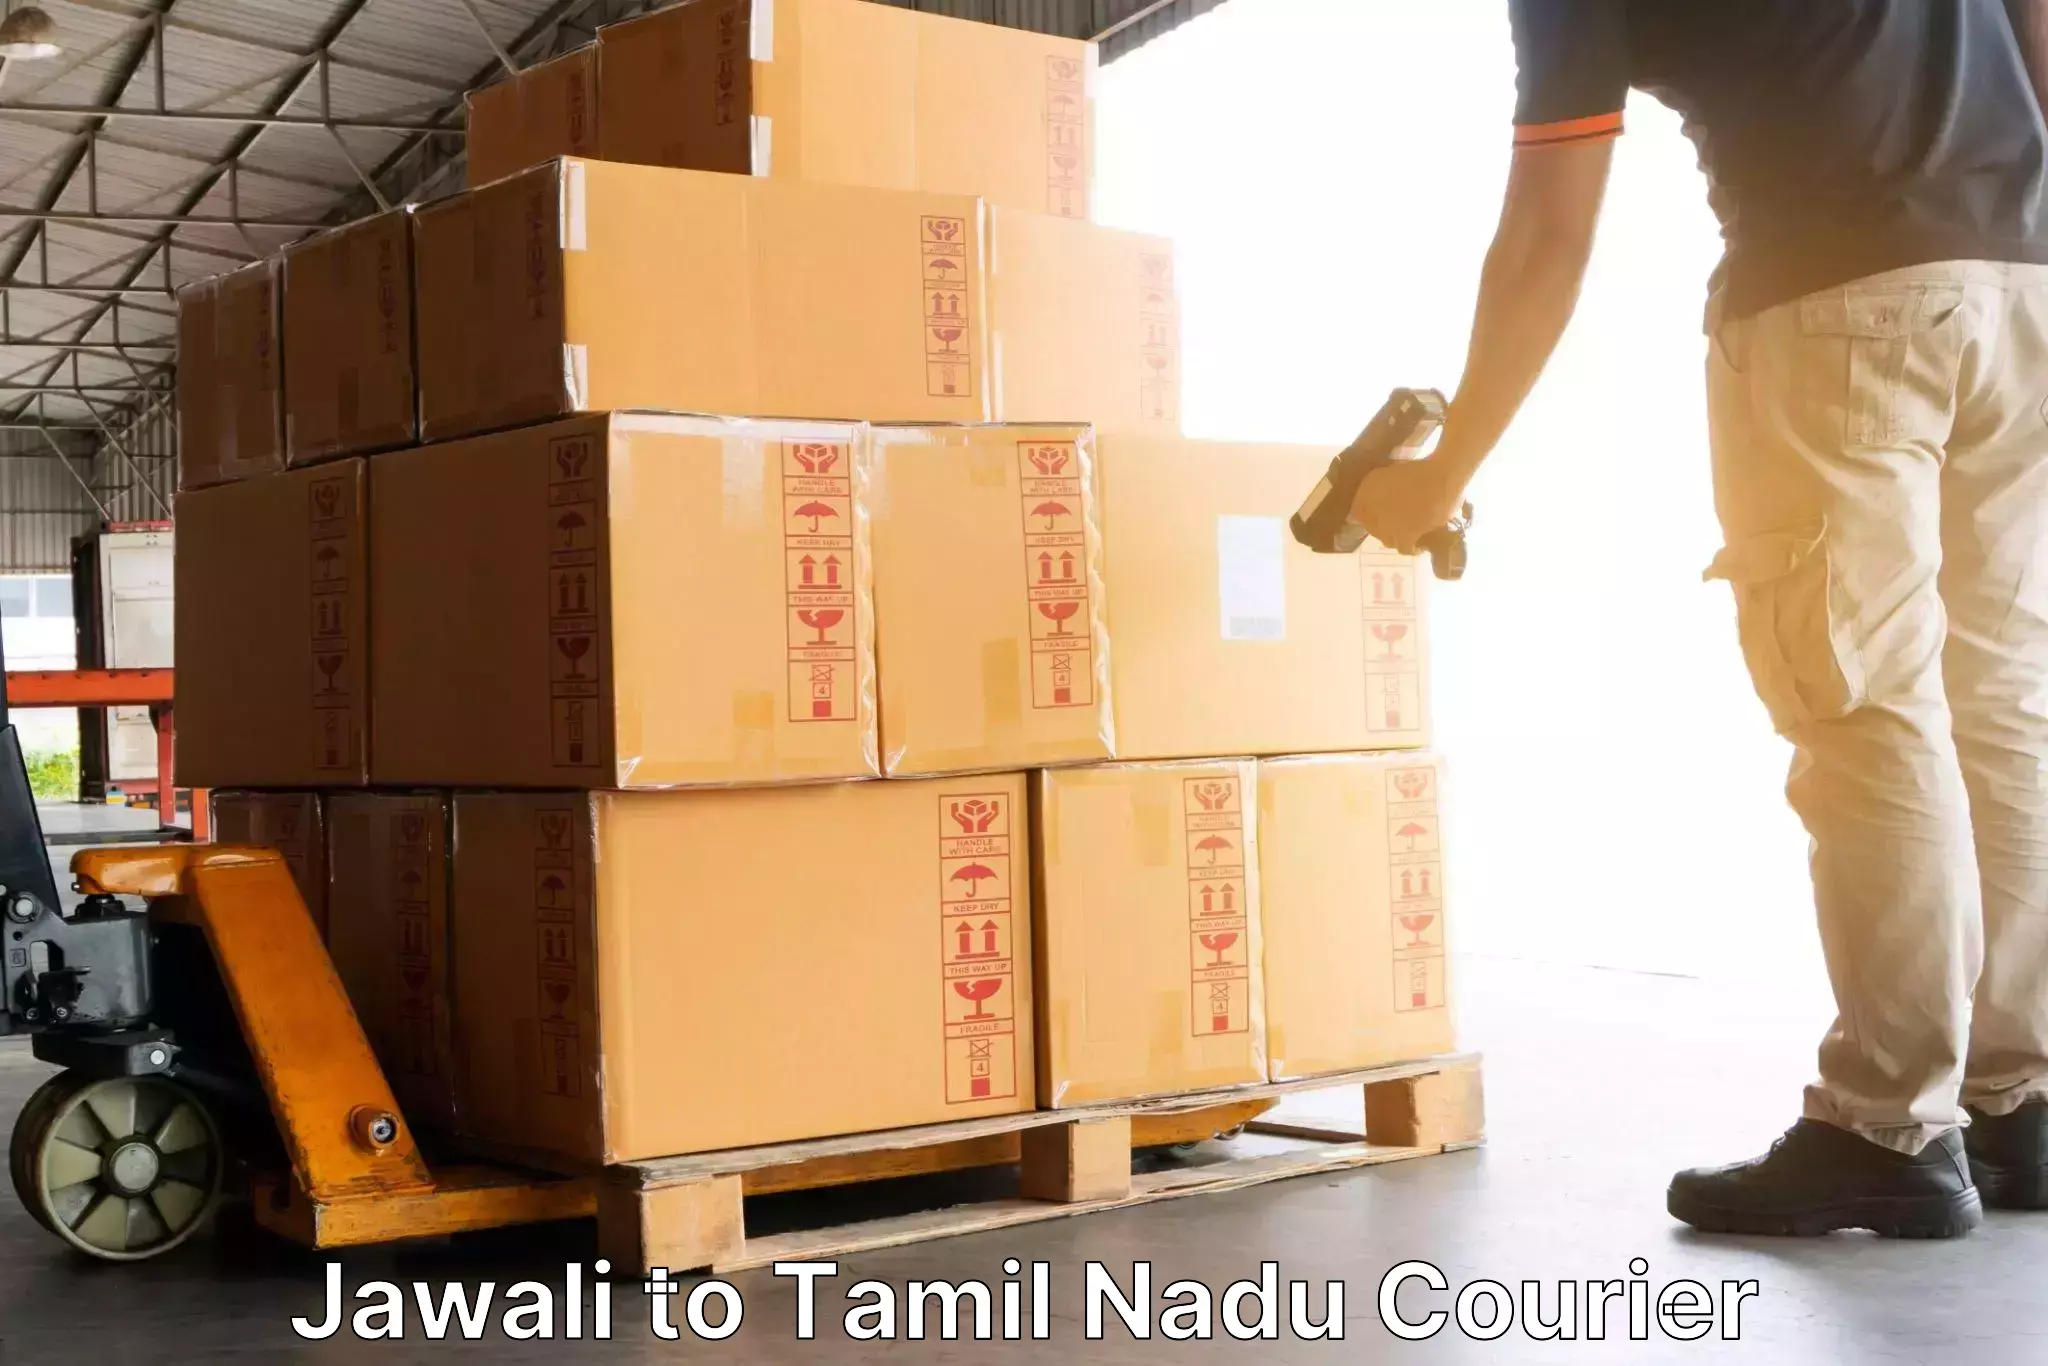 Reliable delivery network Jawali to Denkanikottai